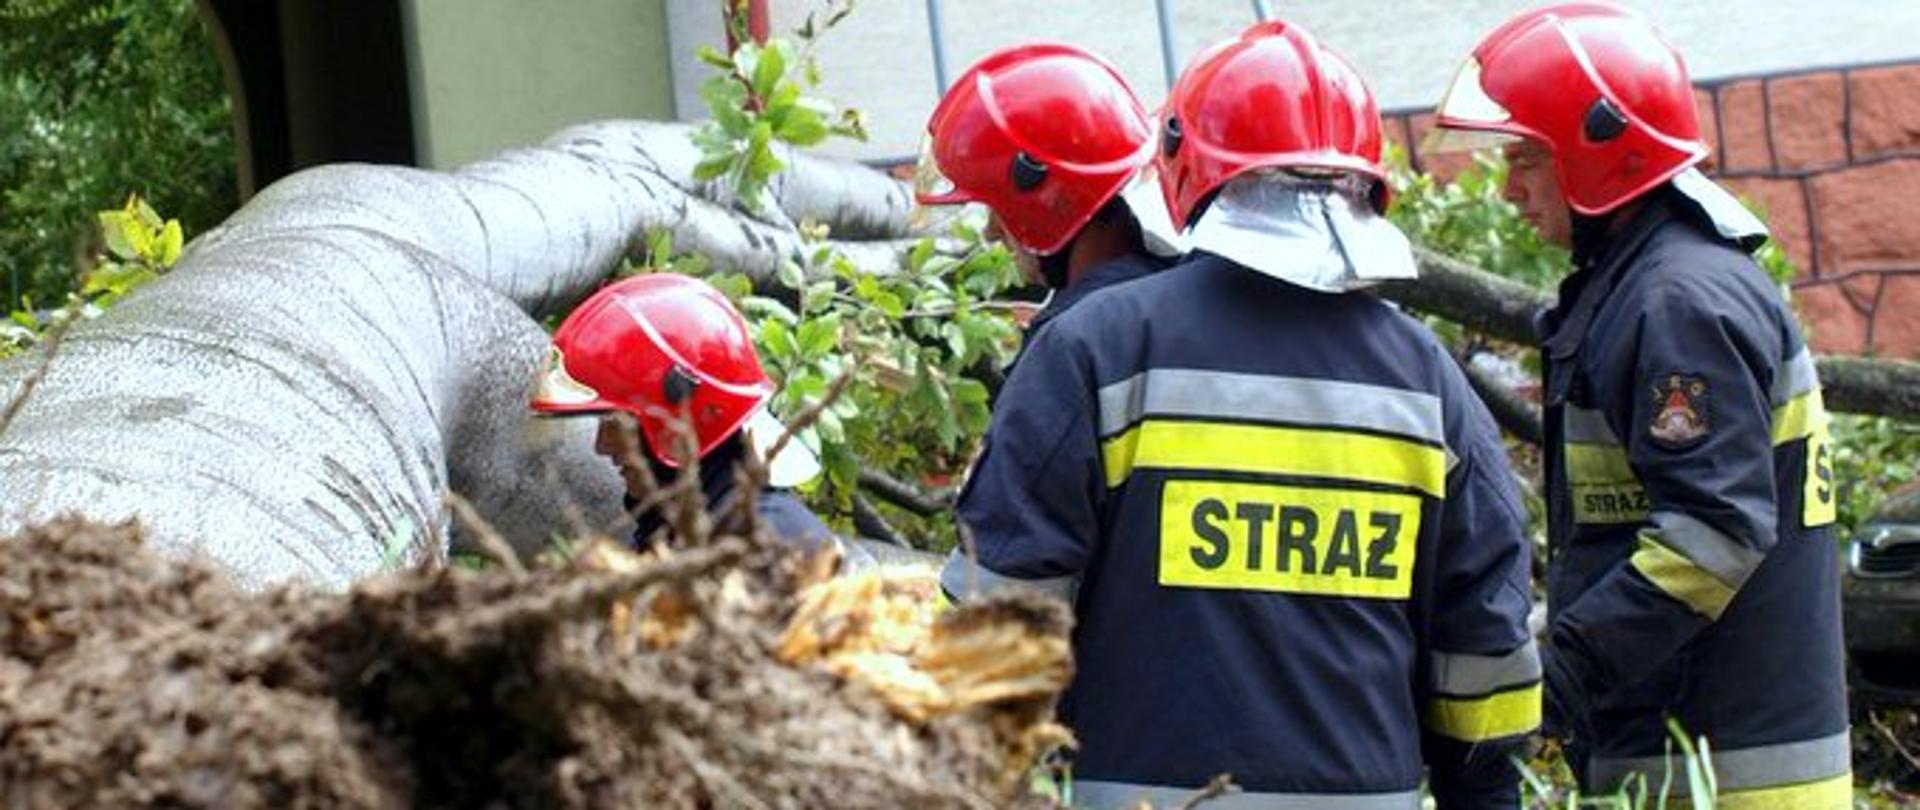 Strażacy podczas interwencji przy powalonym drzewie